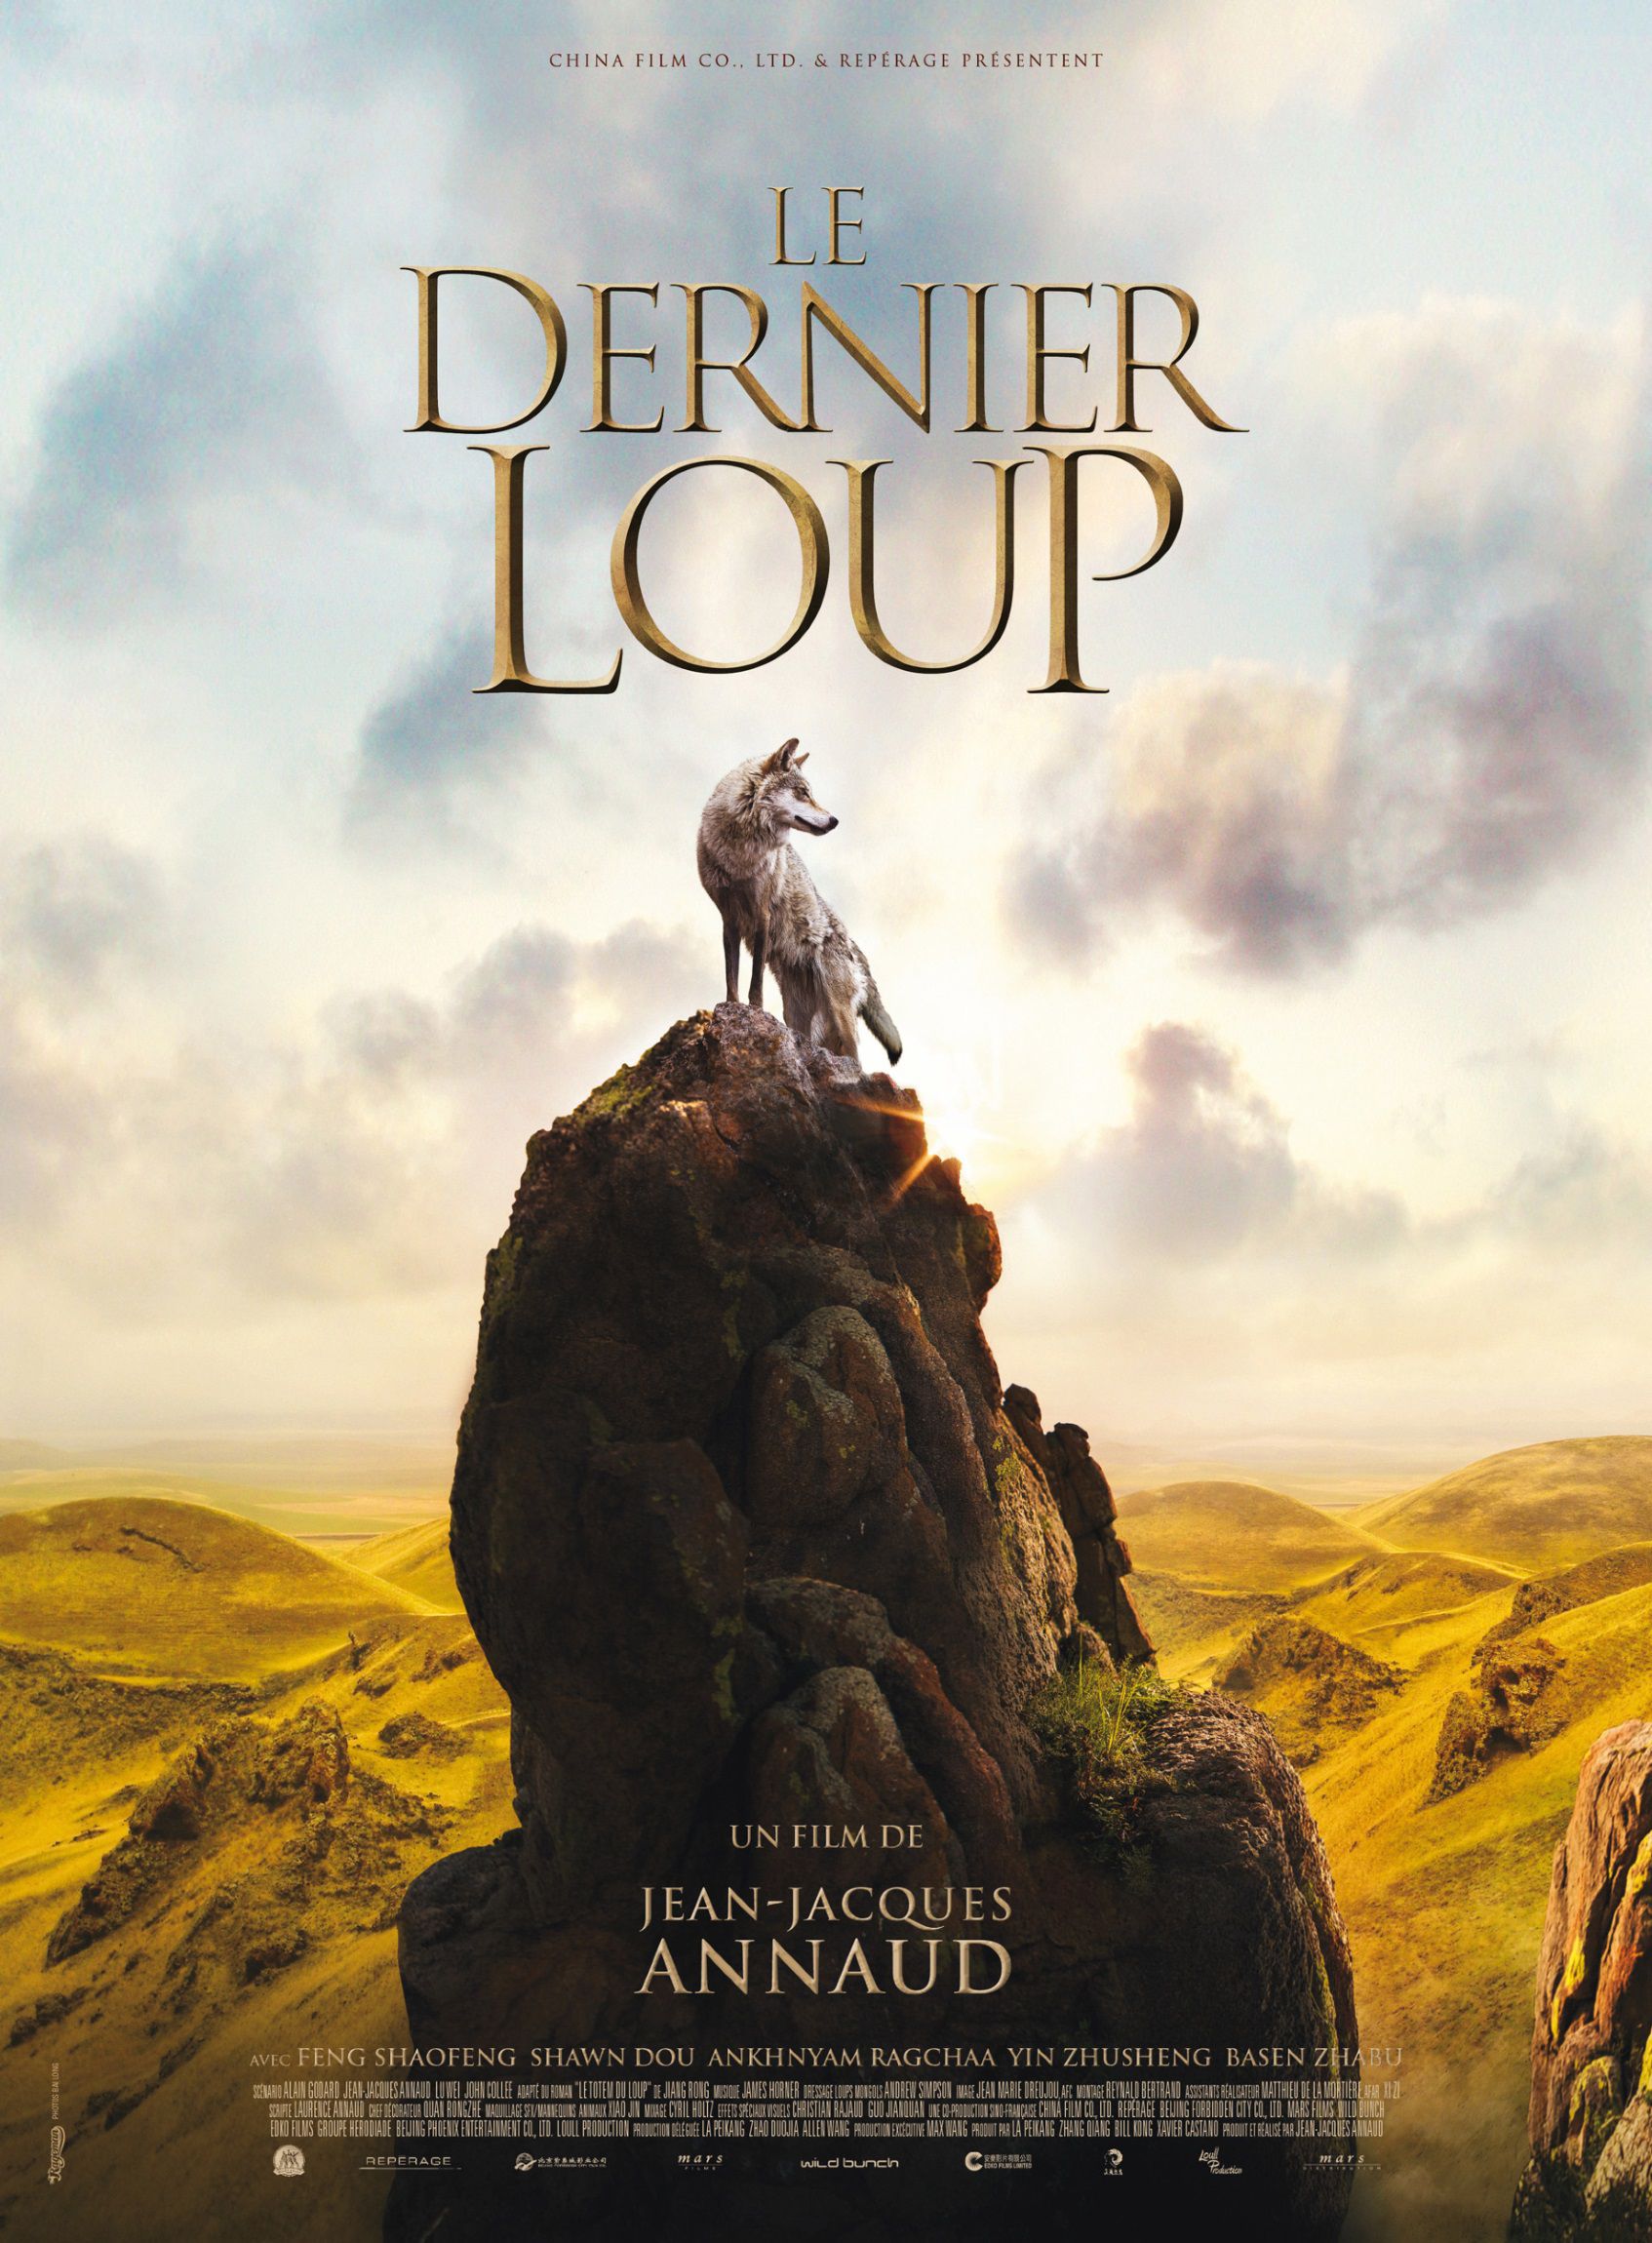 Le Dernier Loup - Film (2015) streaming VF gratuit complet